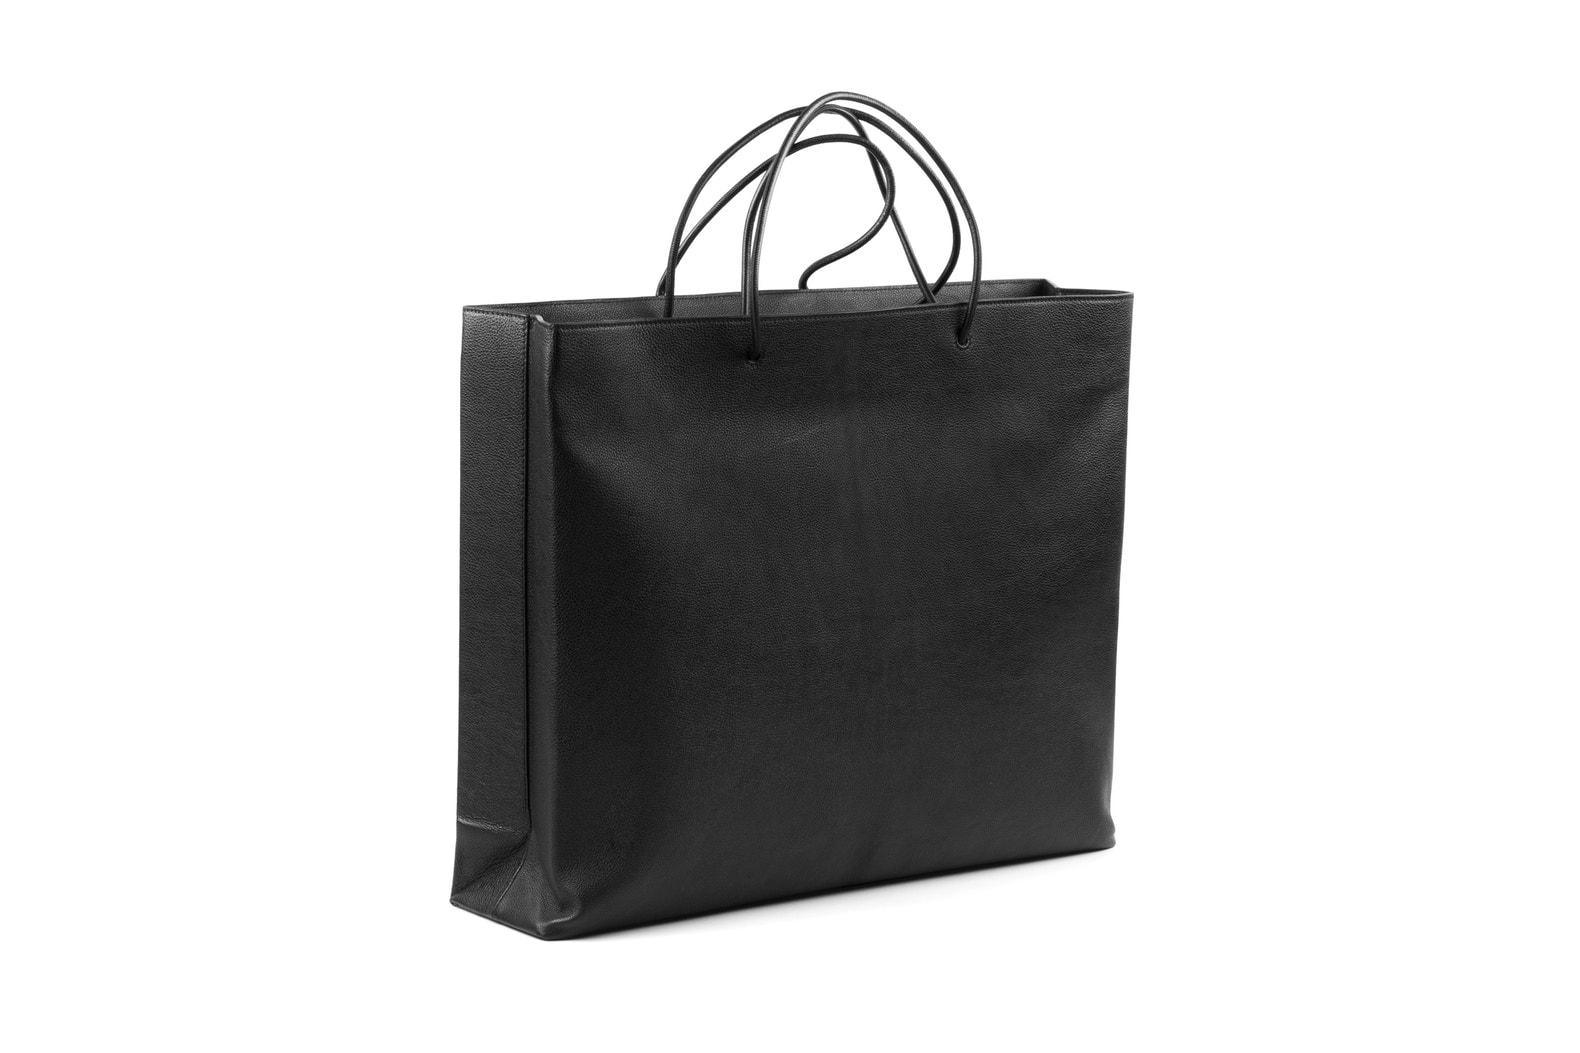 Balenciaga Black Shopping Bag 1800 USD